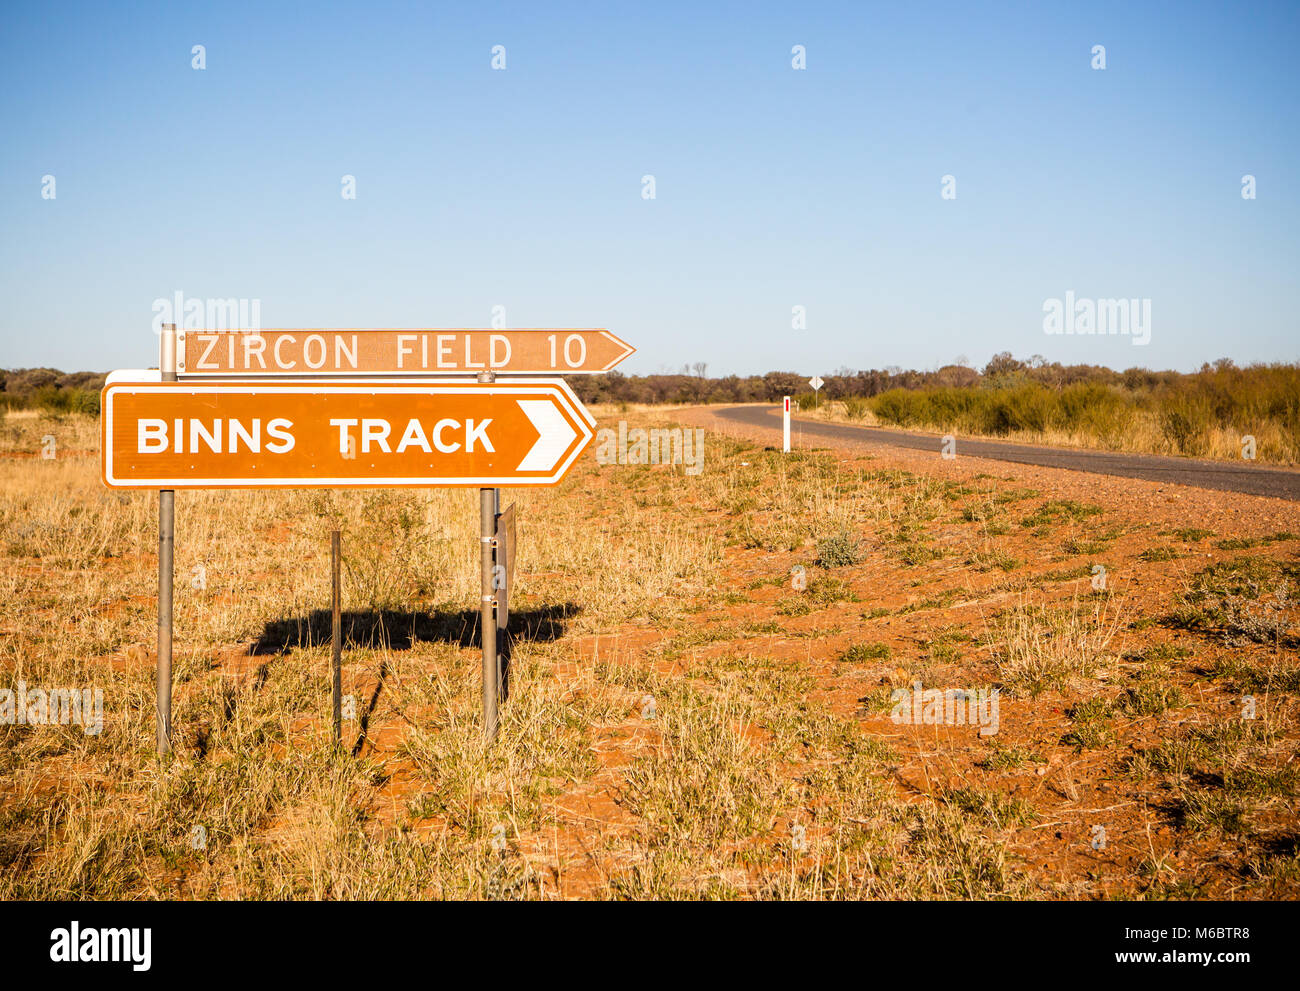 Binns Track signage aus der Fülle Highway in der Nähe von Alice Springs, Northern Territory, Australien. Berühmt für Juwel Opale. Stockfoto